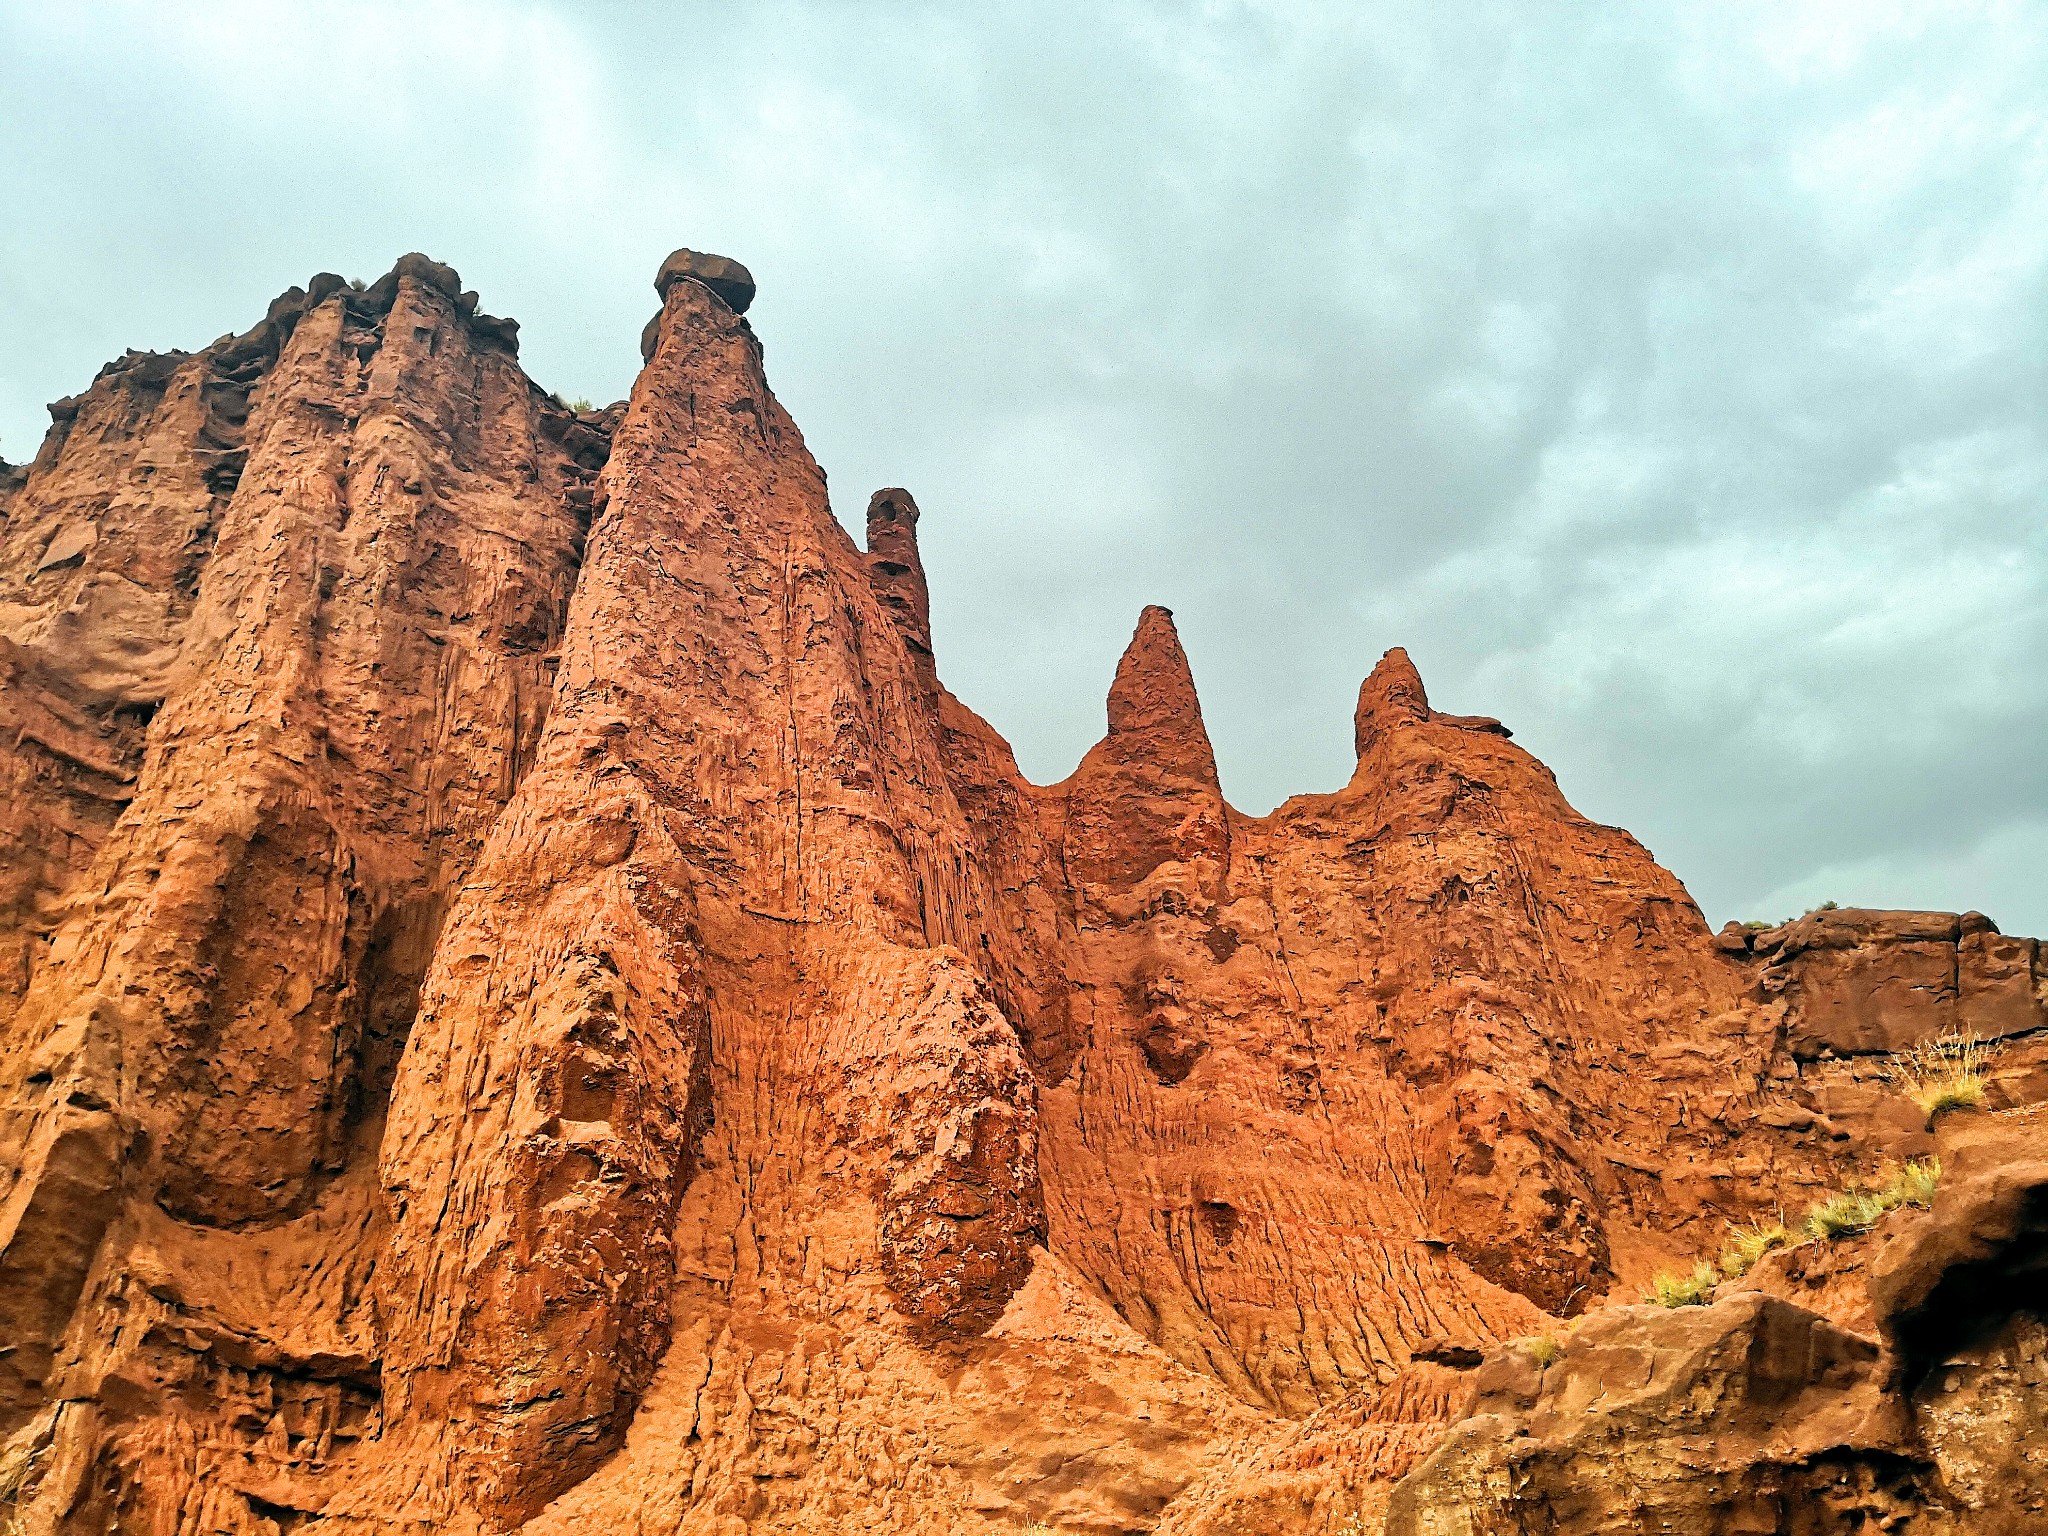 【游记】穿越新疆(第三站)温宿:火星峡谷,天造孤本